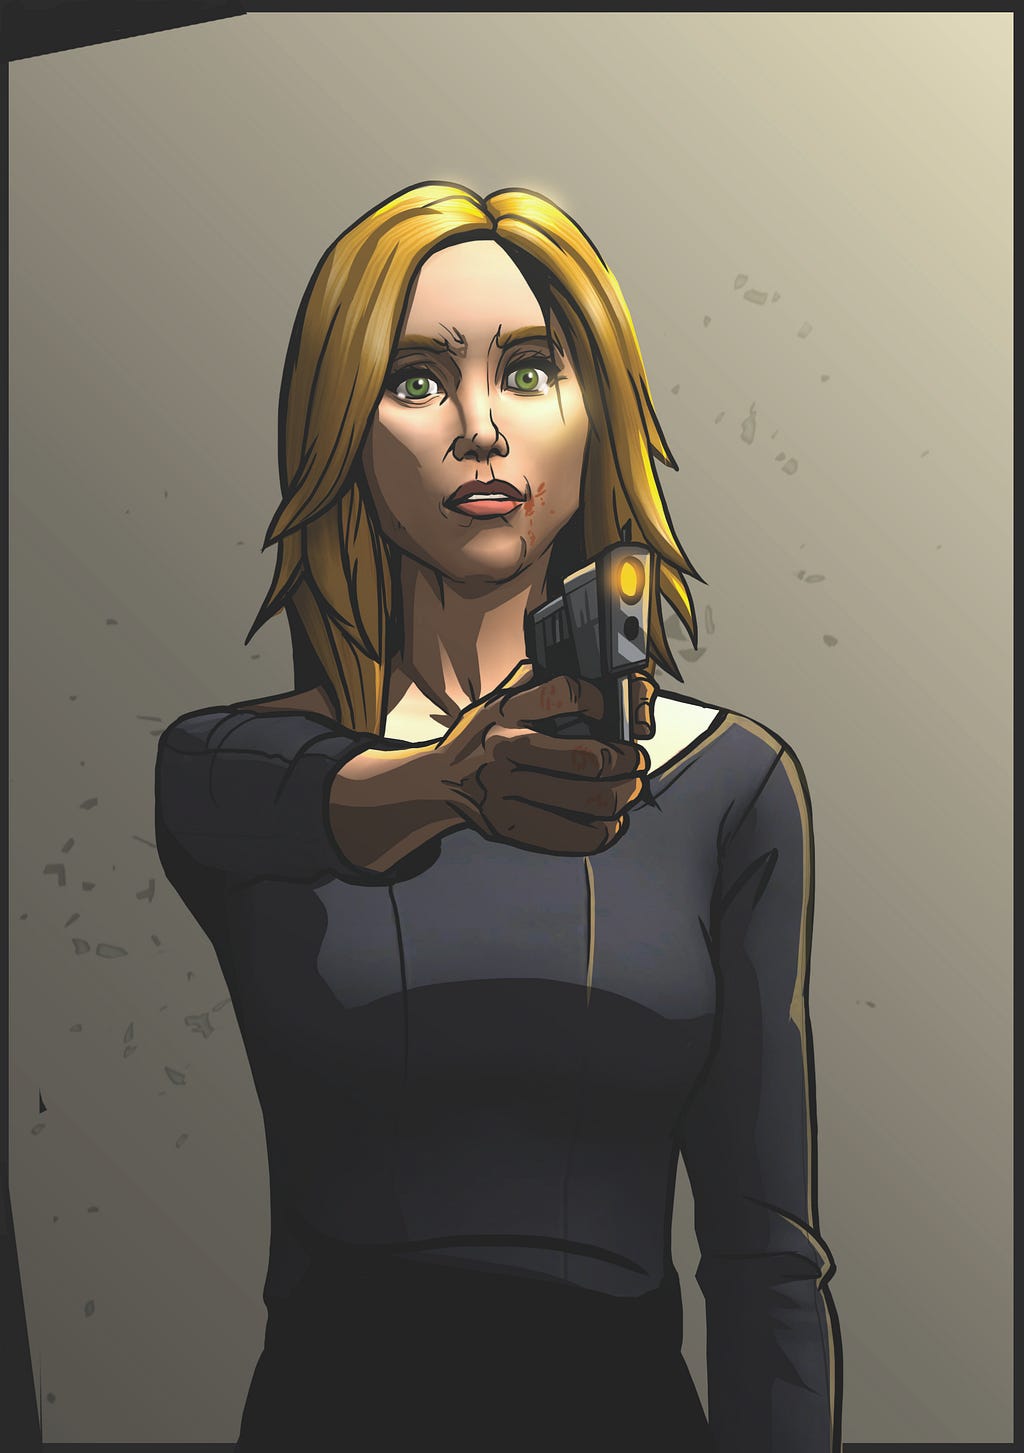 A blonde woman holding a gun, digital artwork